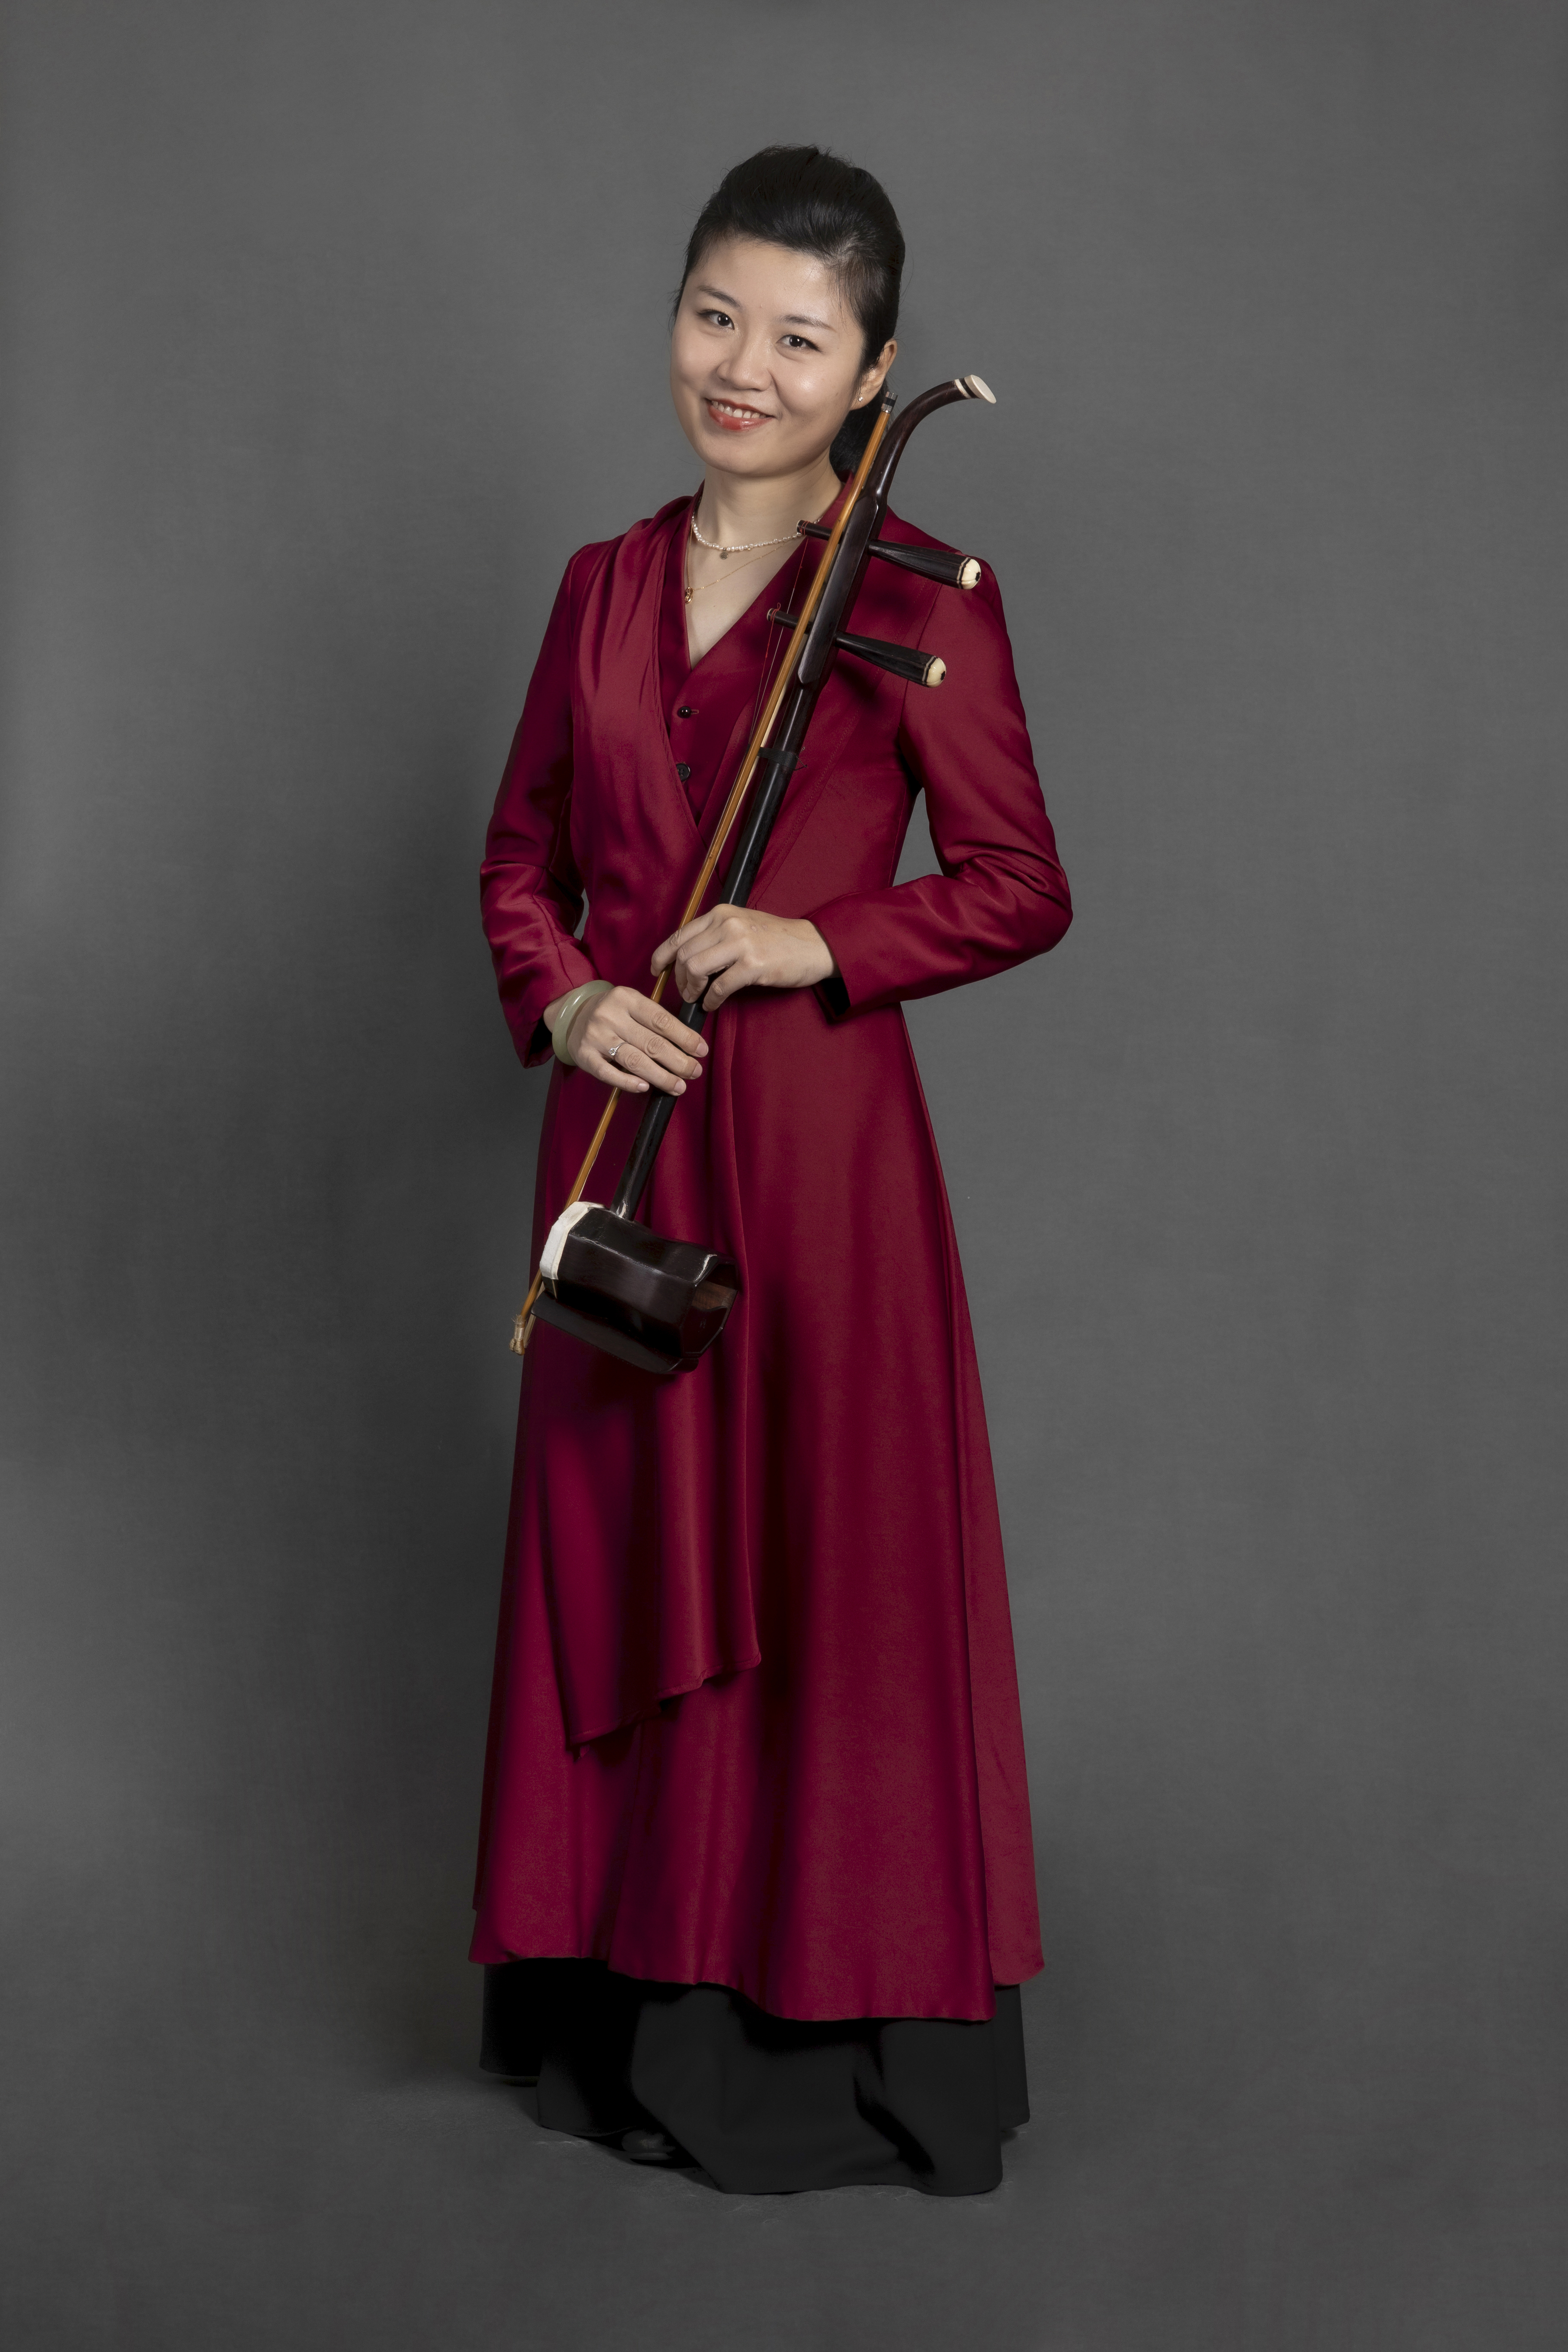 Zhou_Ruoyu Musicians of Singapore Chinese Orchestra